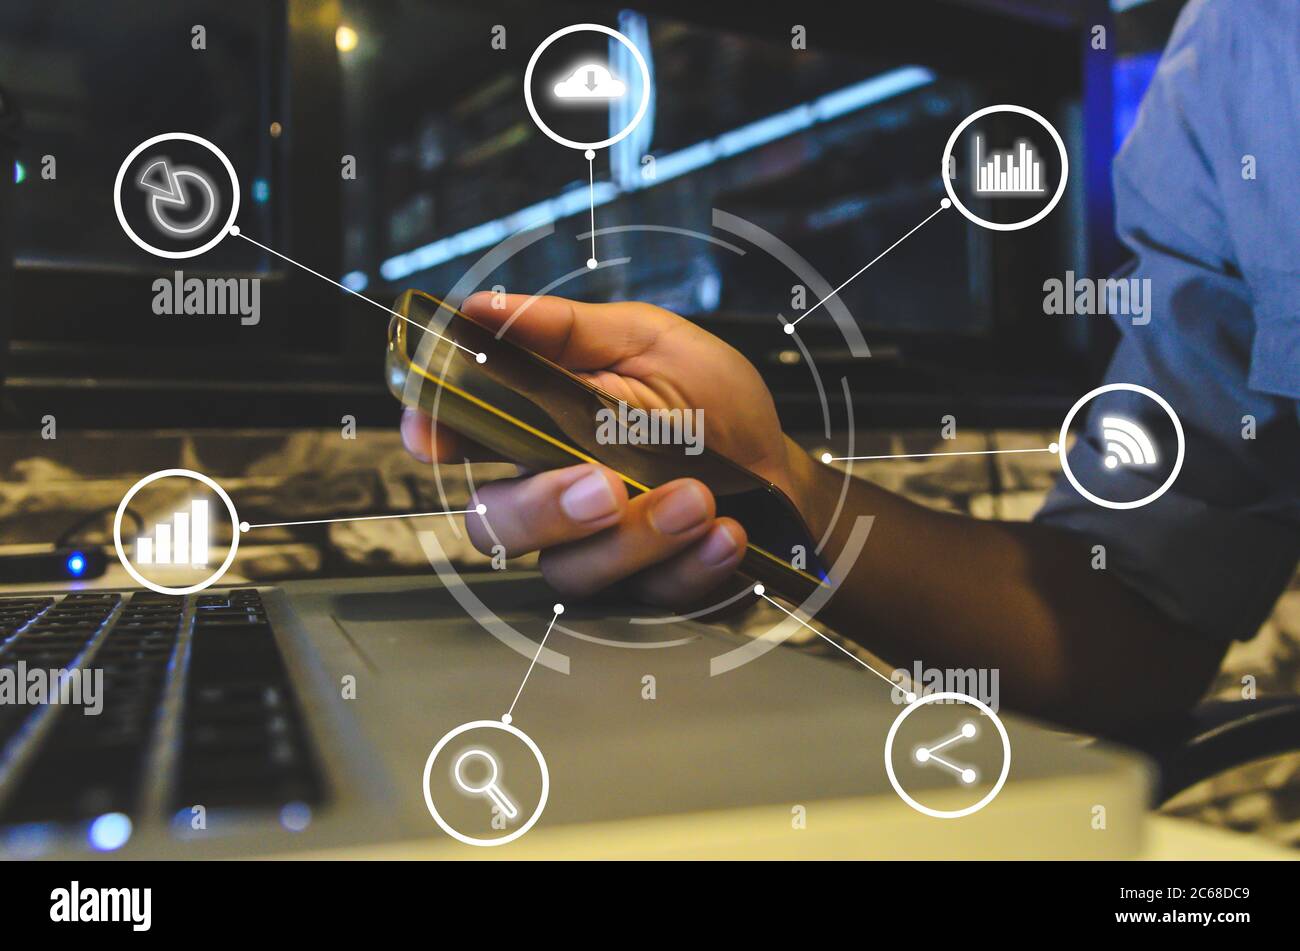 Business Hand mit Smartphone mit Icons Konzept. Hand verwenden Smartphone Online-Shopping Social Network Konzept.Digital Marketing Media Network Communi Stockfoto